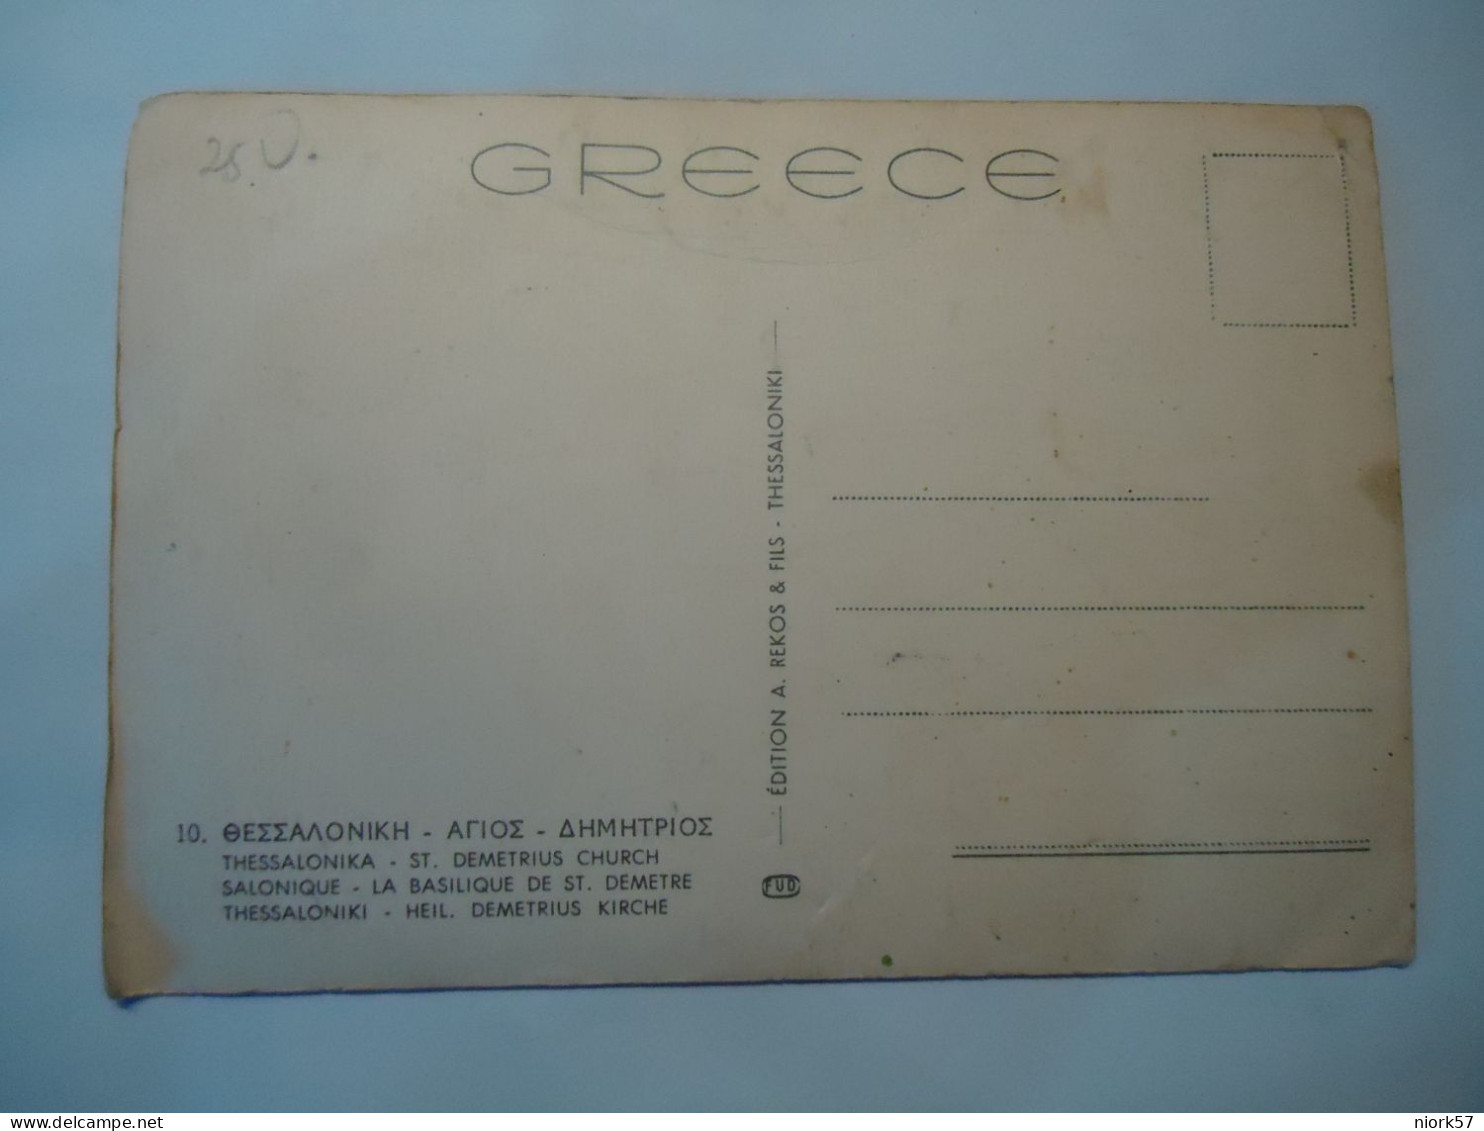 GREECE  POSTCARDS ΘΕΣΣΑΛΟΝΙΚΗ  ΑΓΙΟΣ ΔΗΜΗΤΡΙΟΣ - Grèce